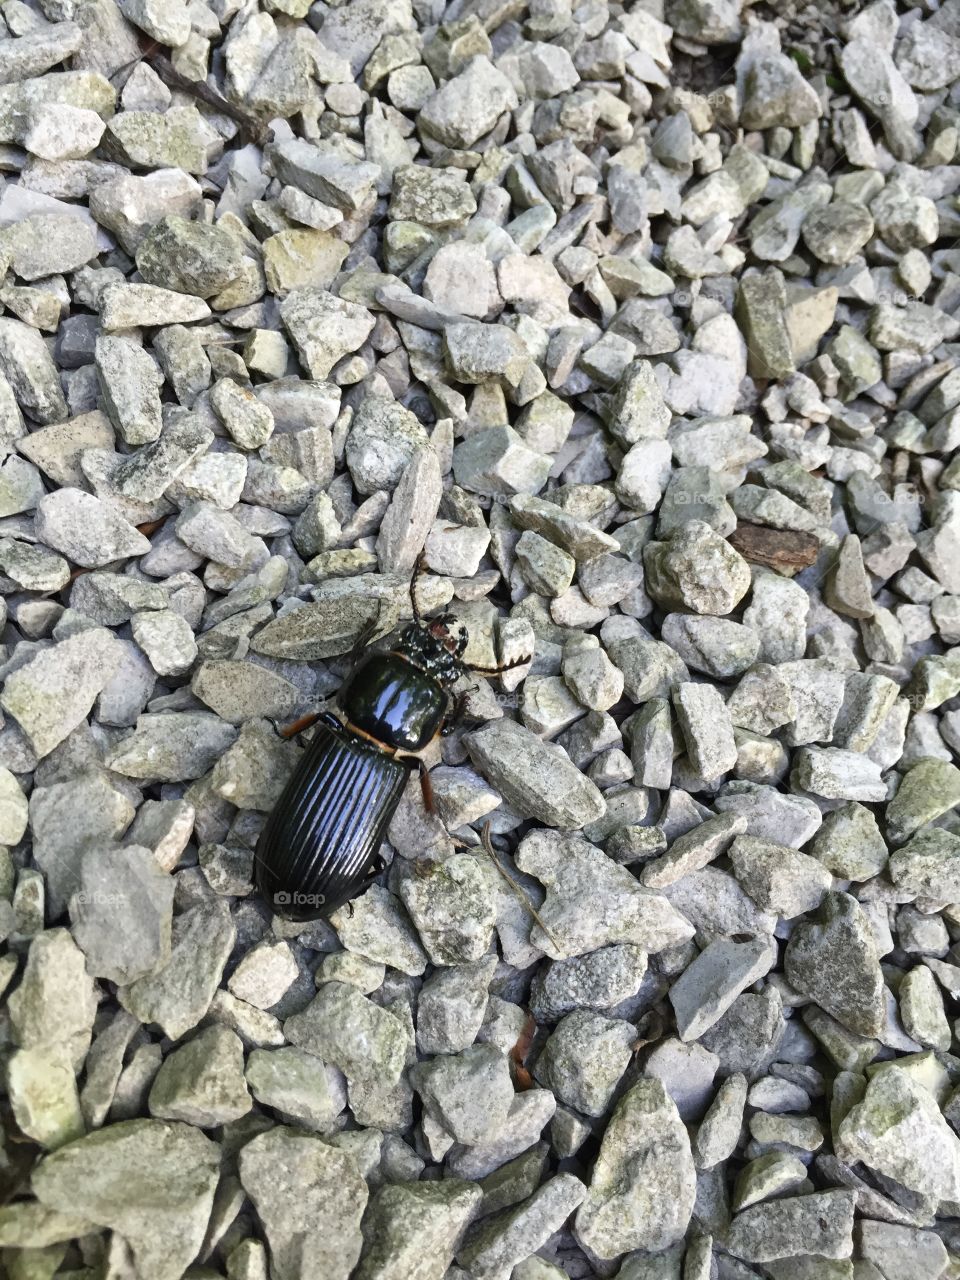 Beetle on rocks